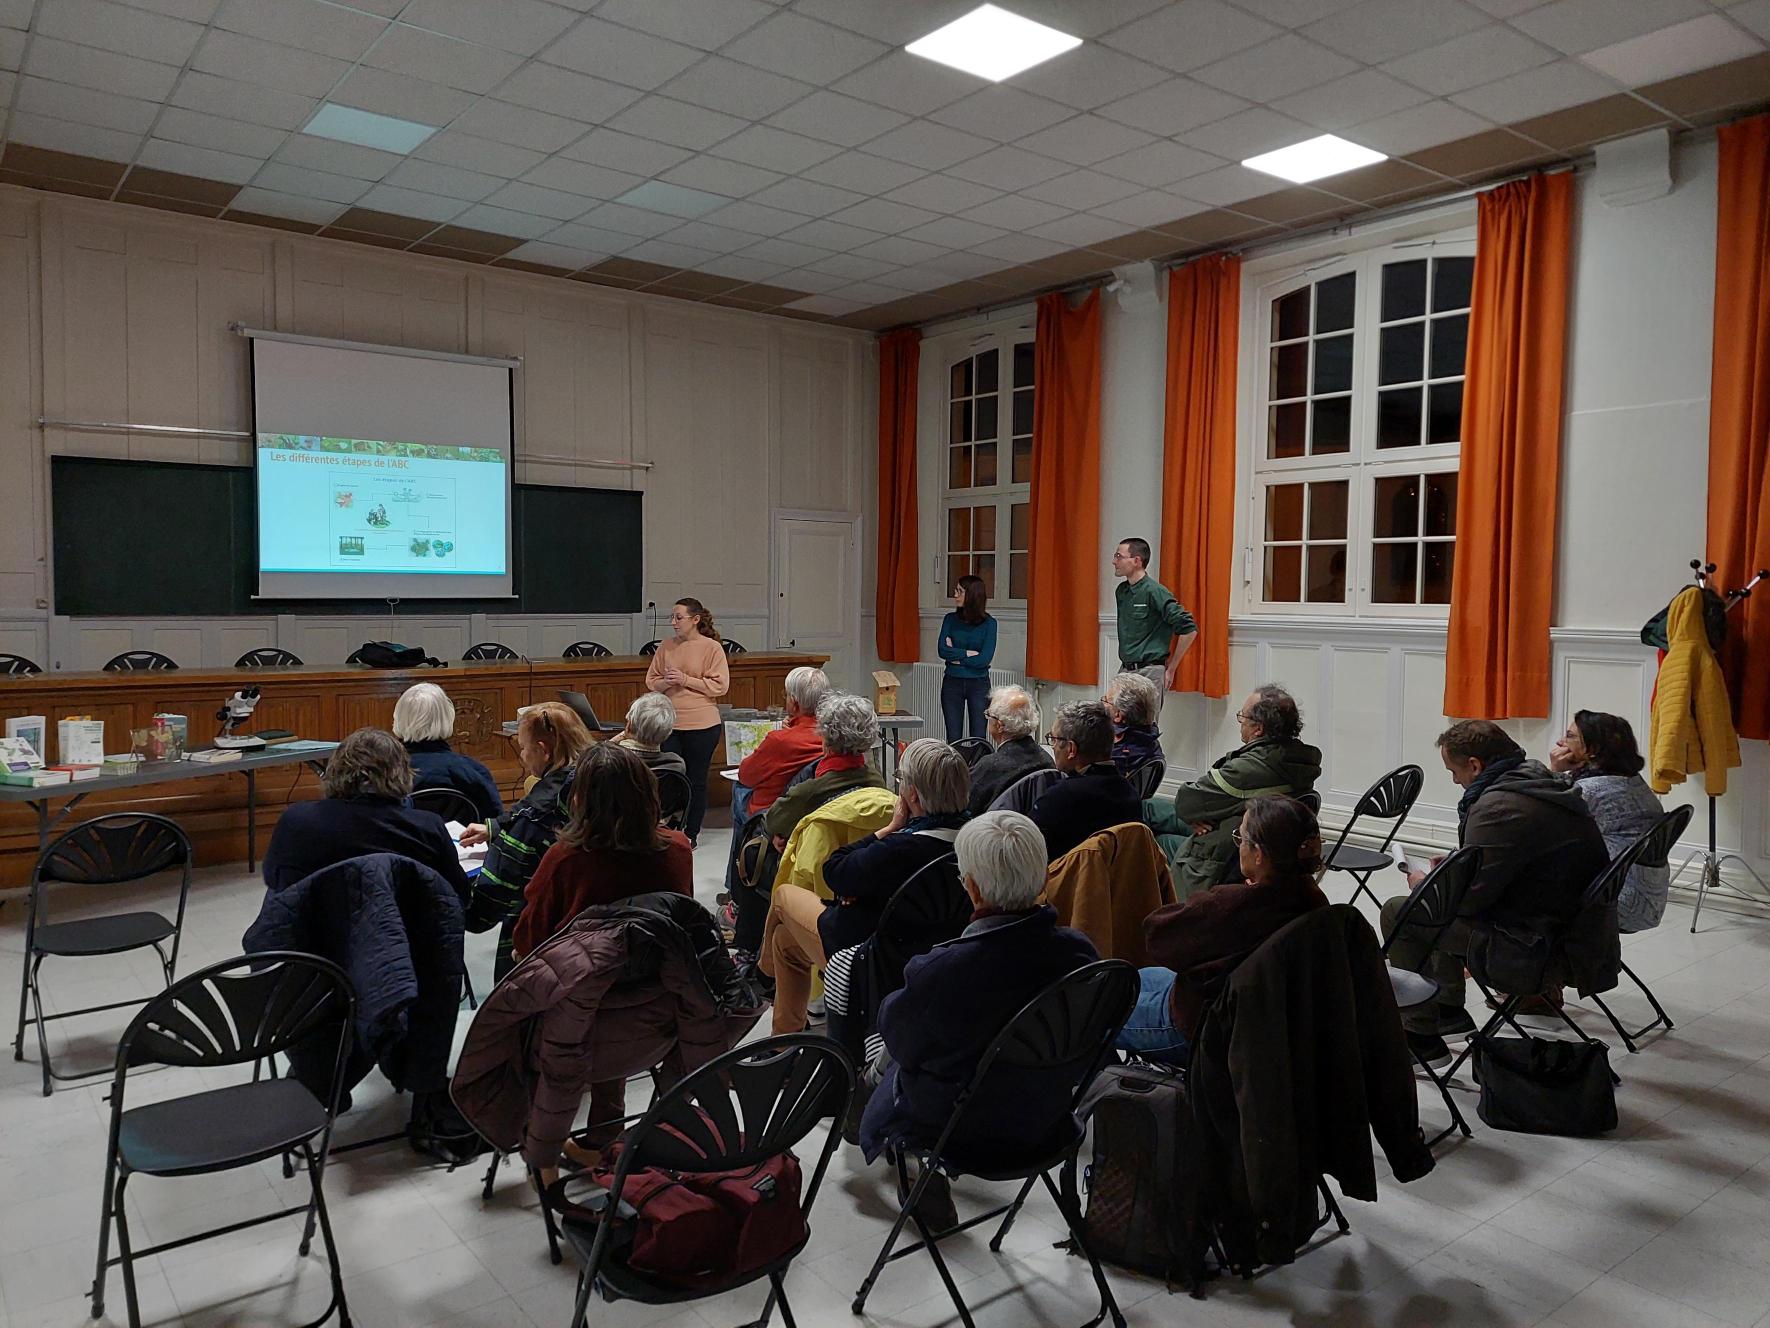 Une réunion publique pour les résultats de l'ABC de la Communauté de communes Retz-Valois